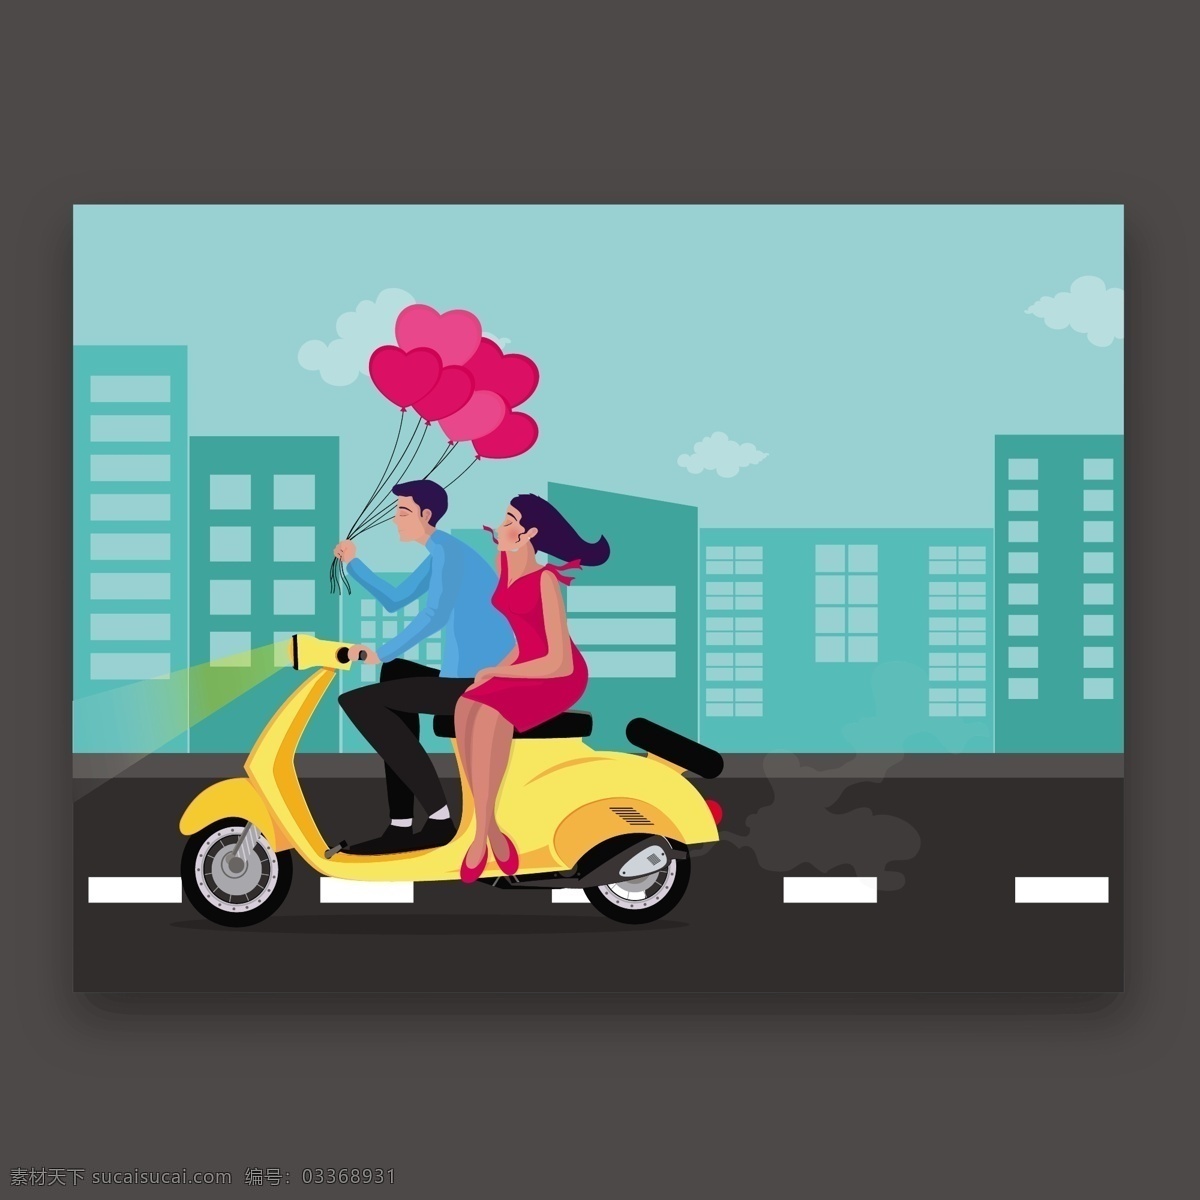 摩托 车上 情侣 漂亮 情人卡 心 卡片 爱 情人节 颜色 庆祝 快乐 夫妇 公寓 装饰 气球 建筑物 平面设计 日期 摩托车